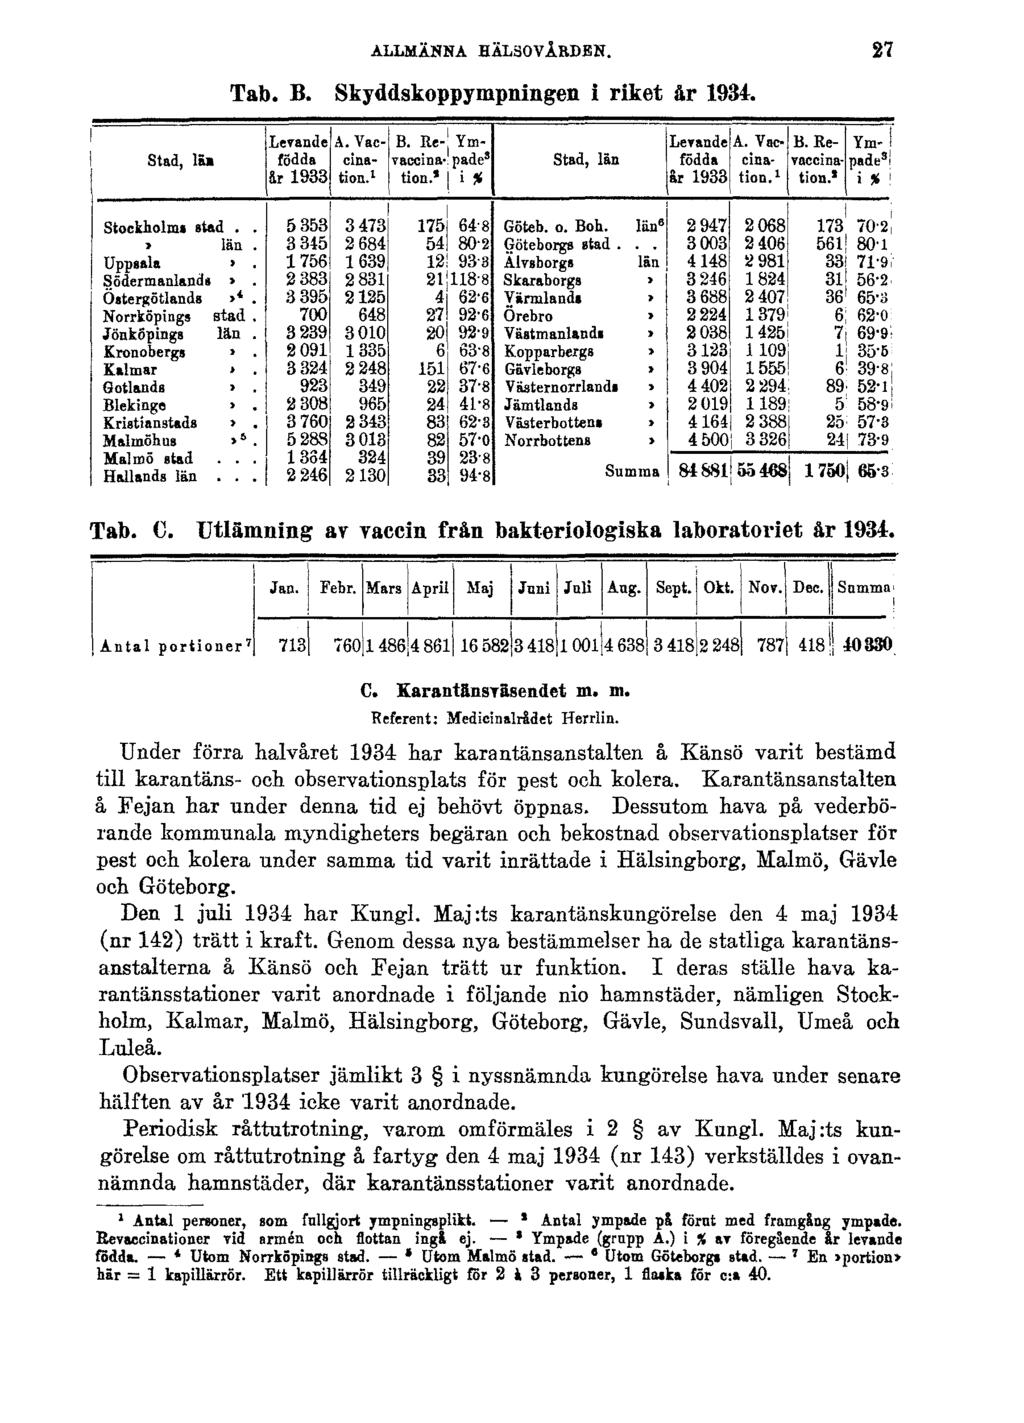 ALLMÄNNA HÄLSOVÅRDEN. Tab. B. Skyddskoppympningen i riket år 1934. 27 Tab. C. Utlämning av vaccin från bakteriologiska laboratoriet år 1934. C. Karantänsväsendet m. m. Referent: Medicinalrådet Herrlin.